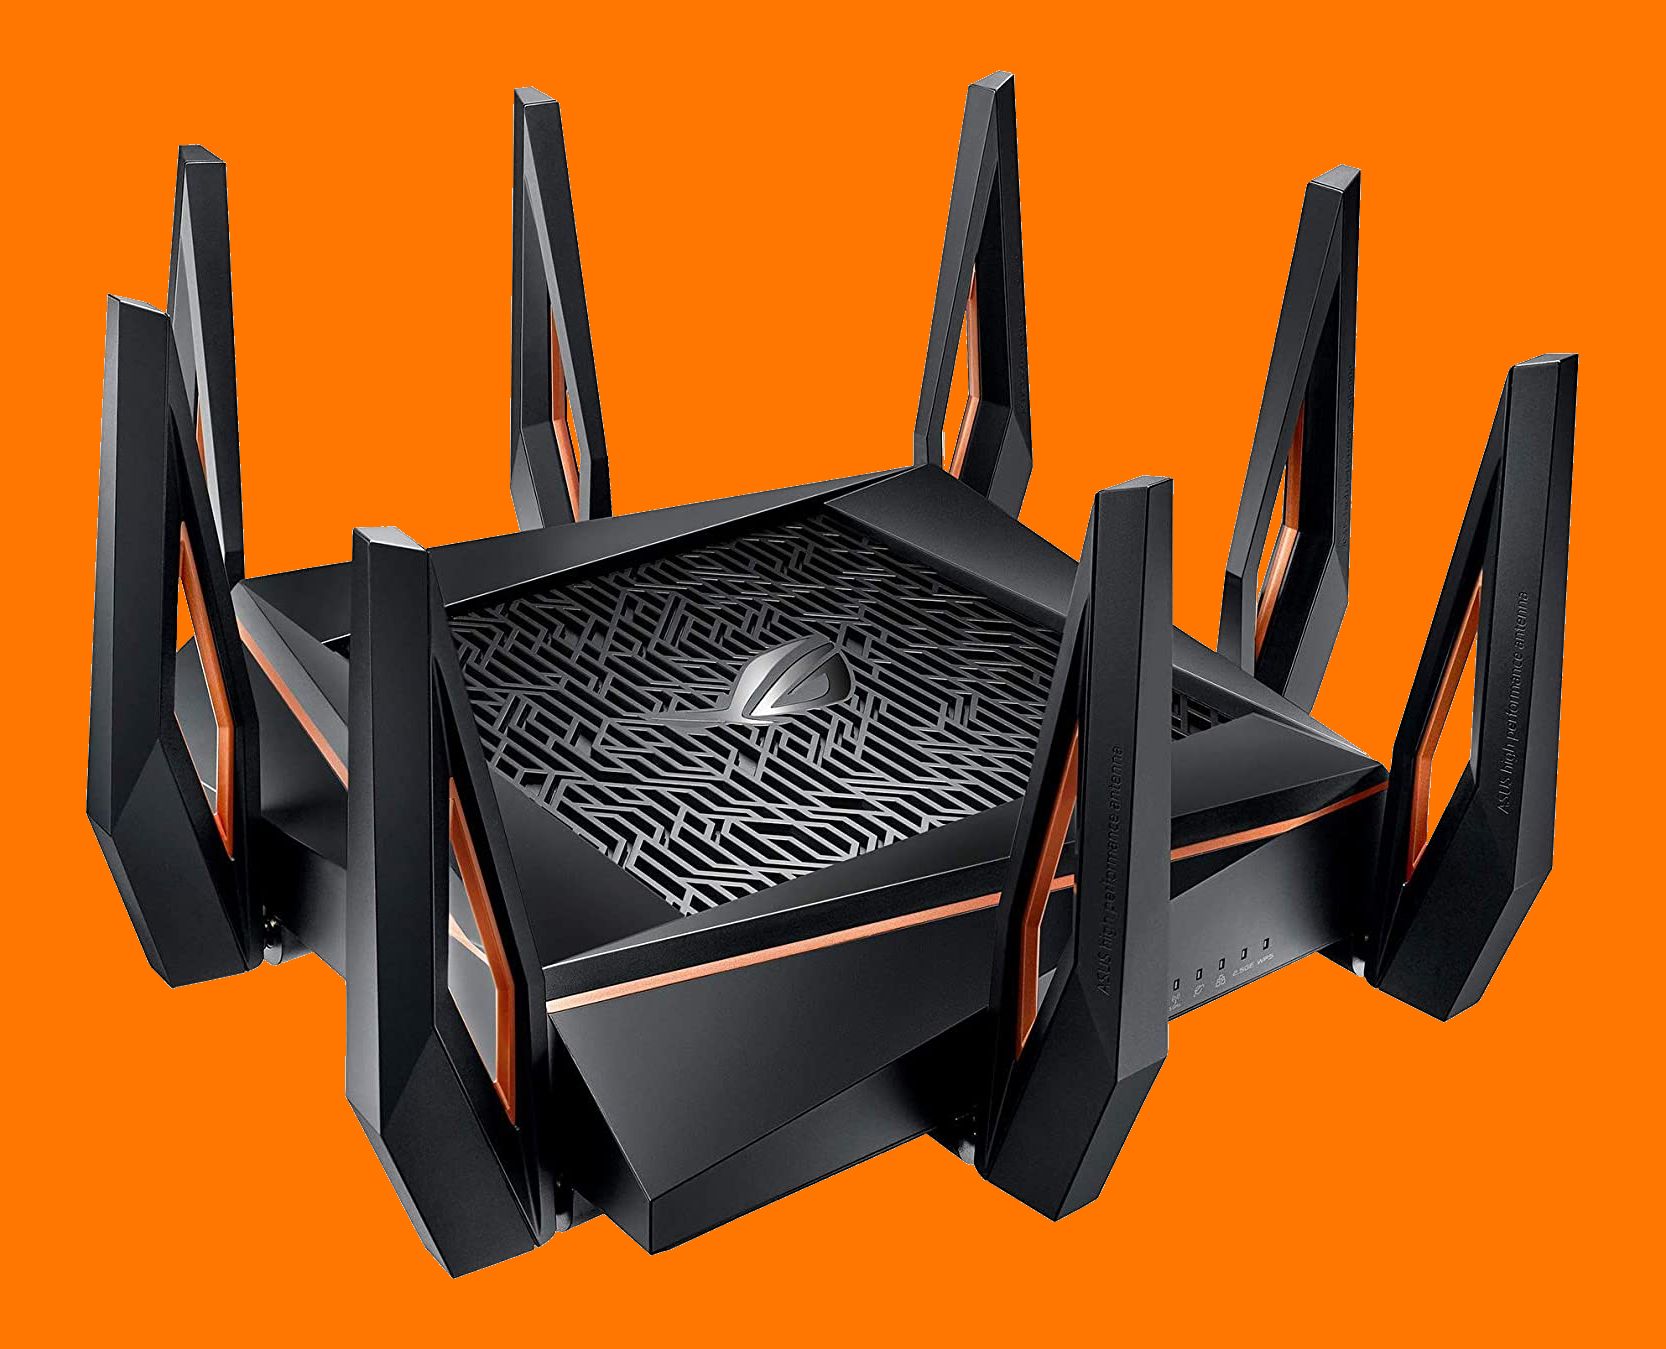 asus rog rapture router - I 5 migliori marchi di router wireless da considerare